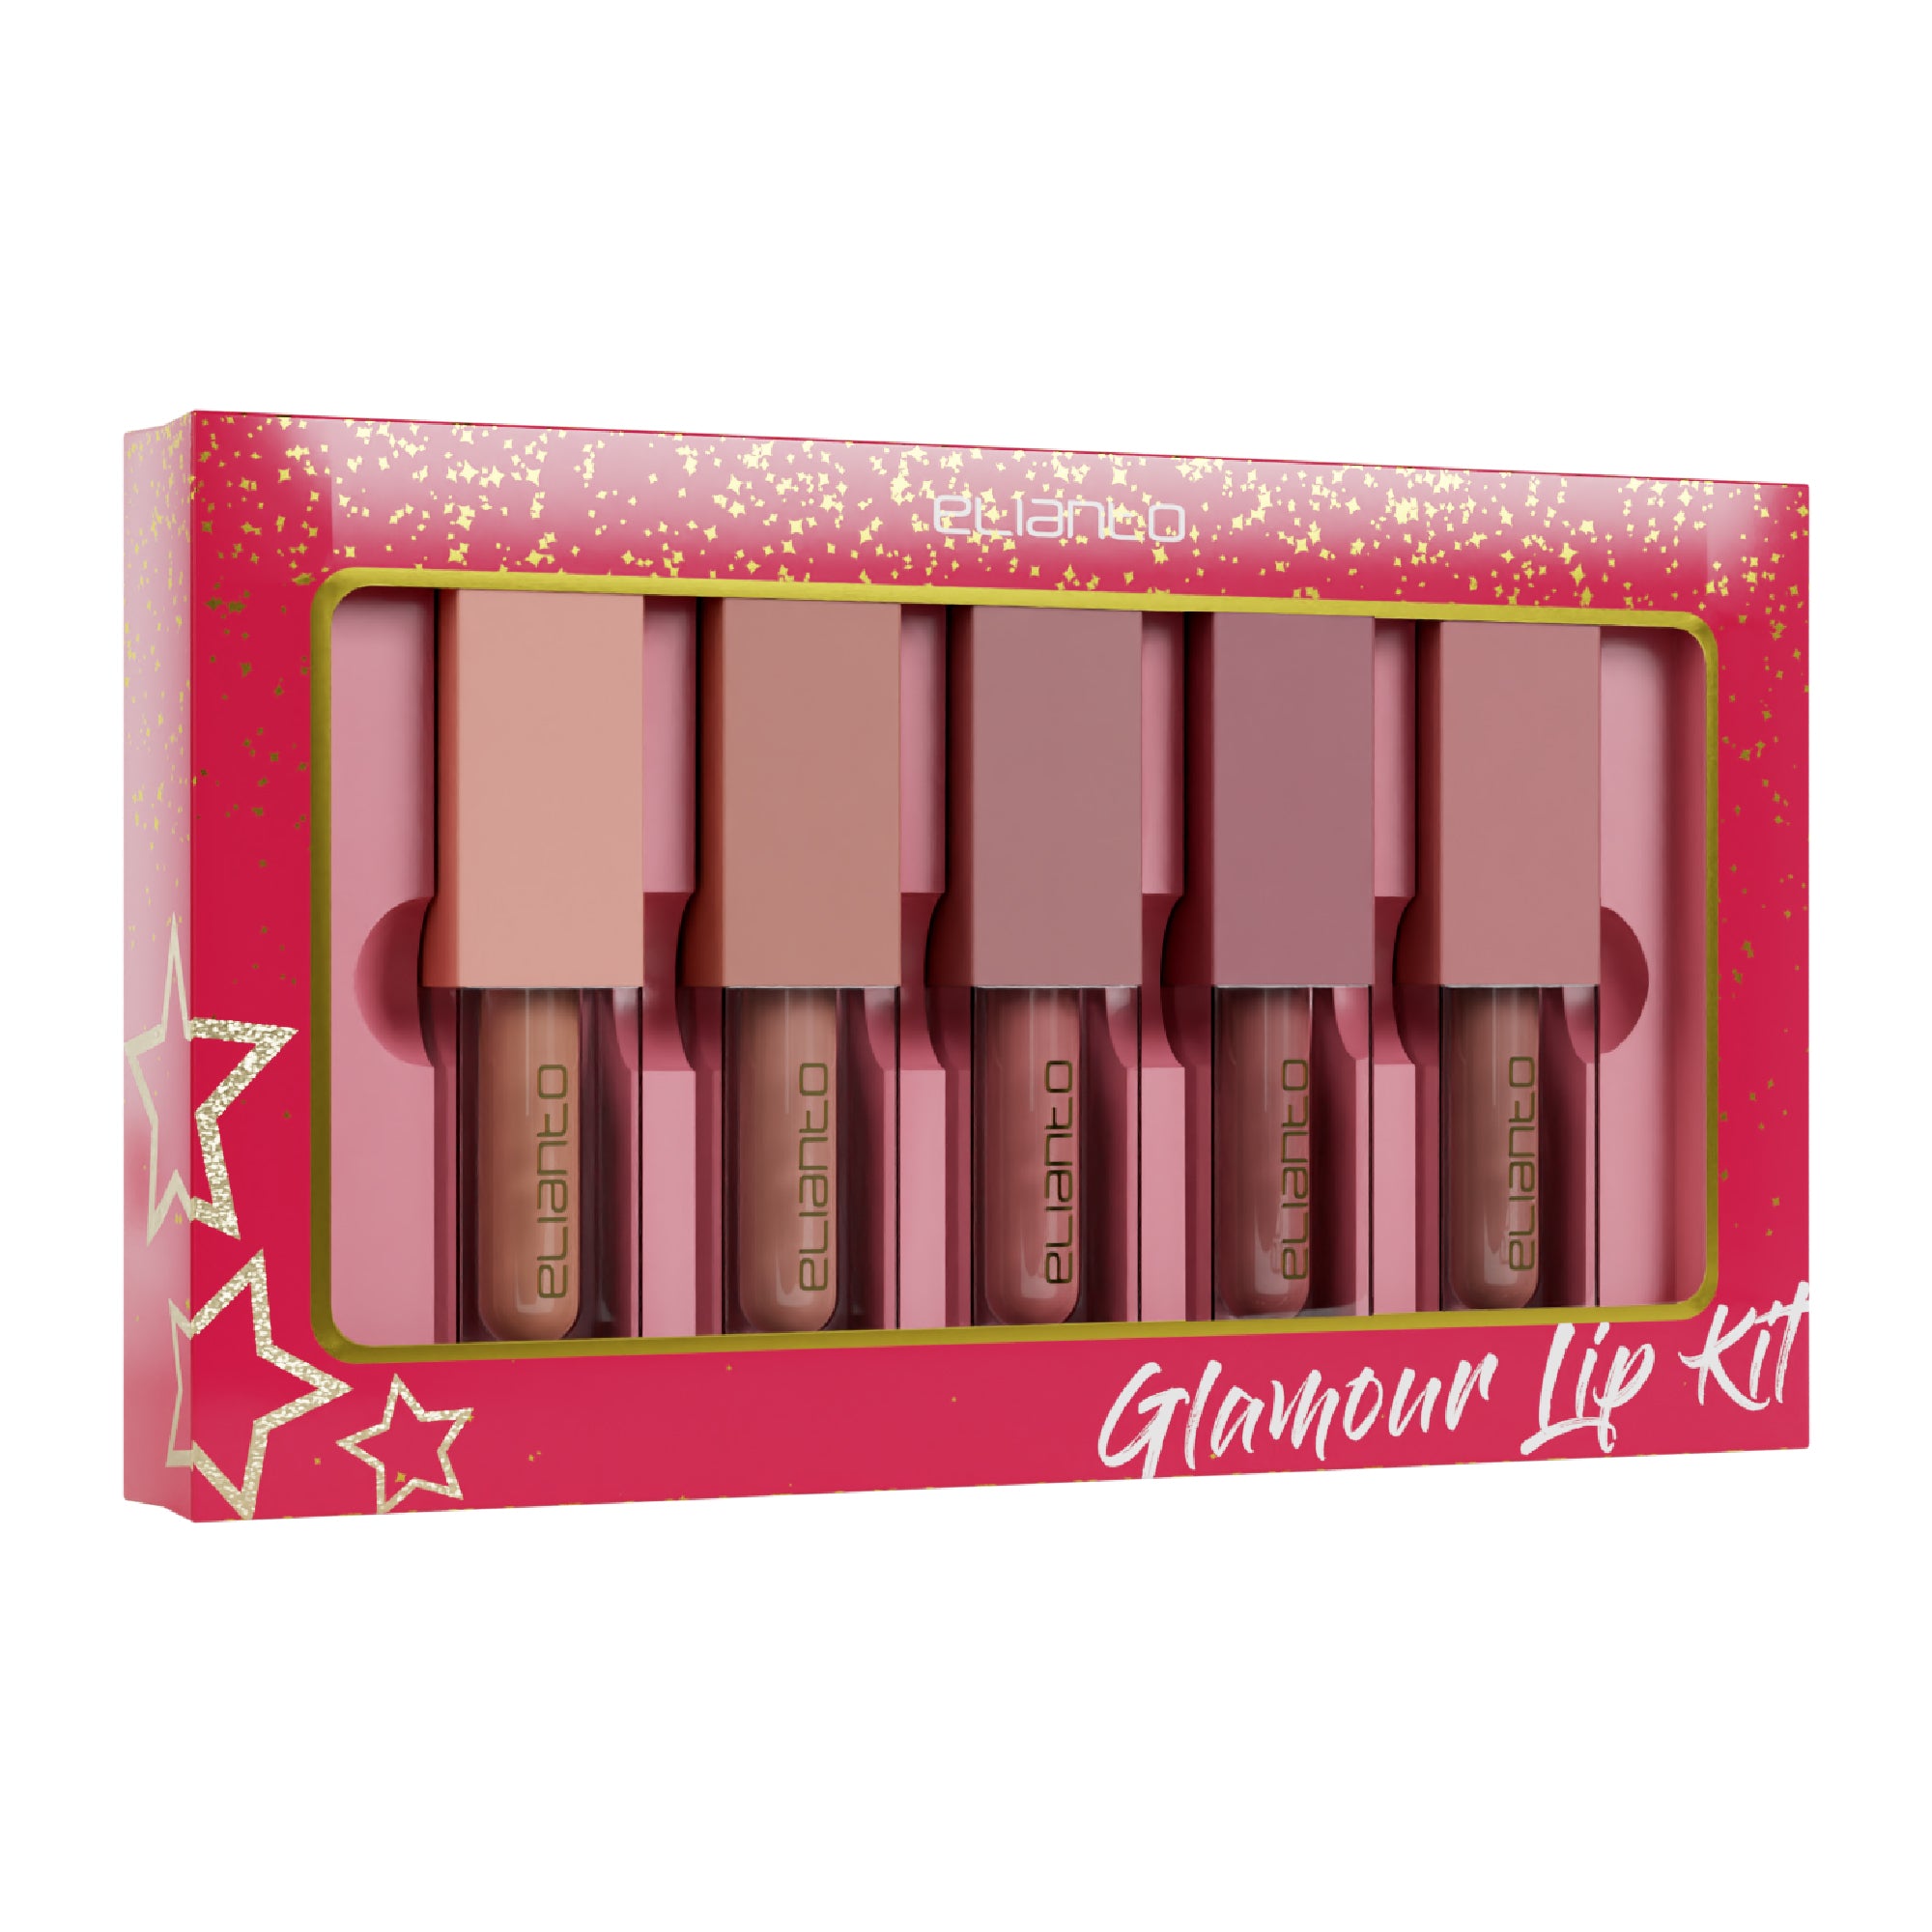 Glamour Lip Kit